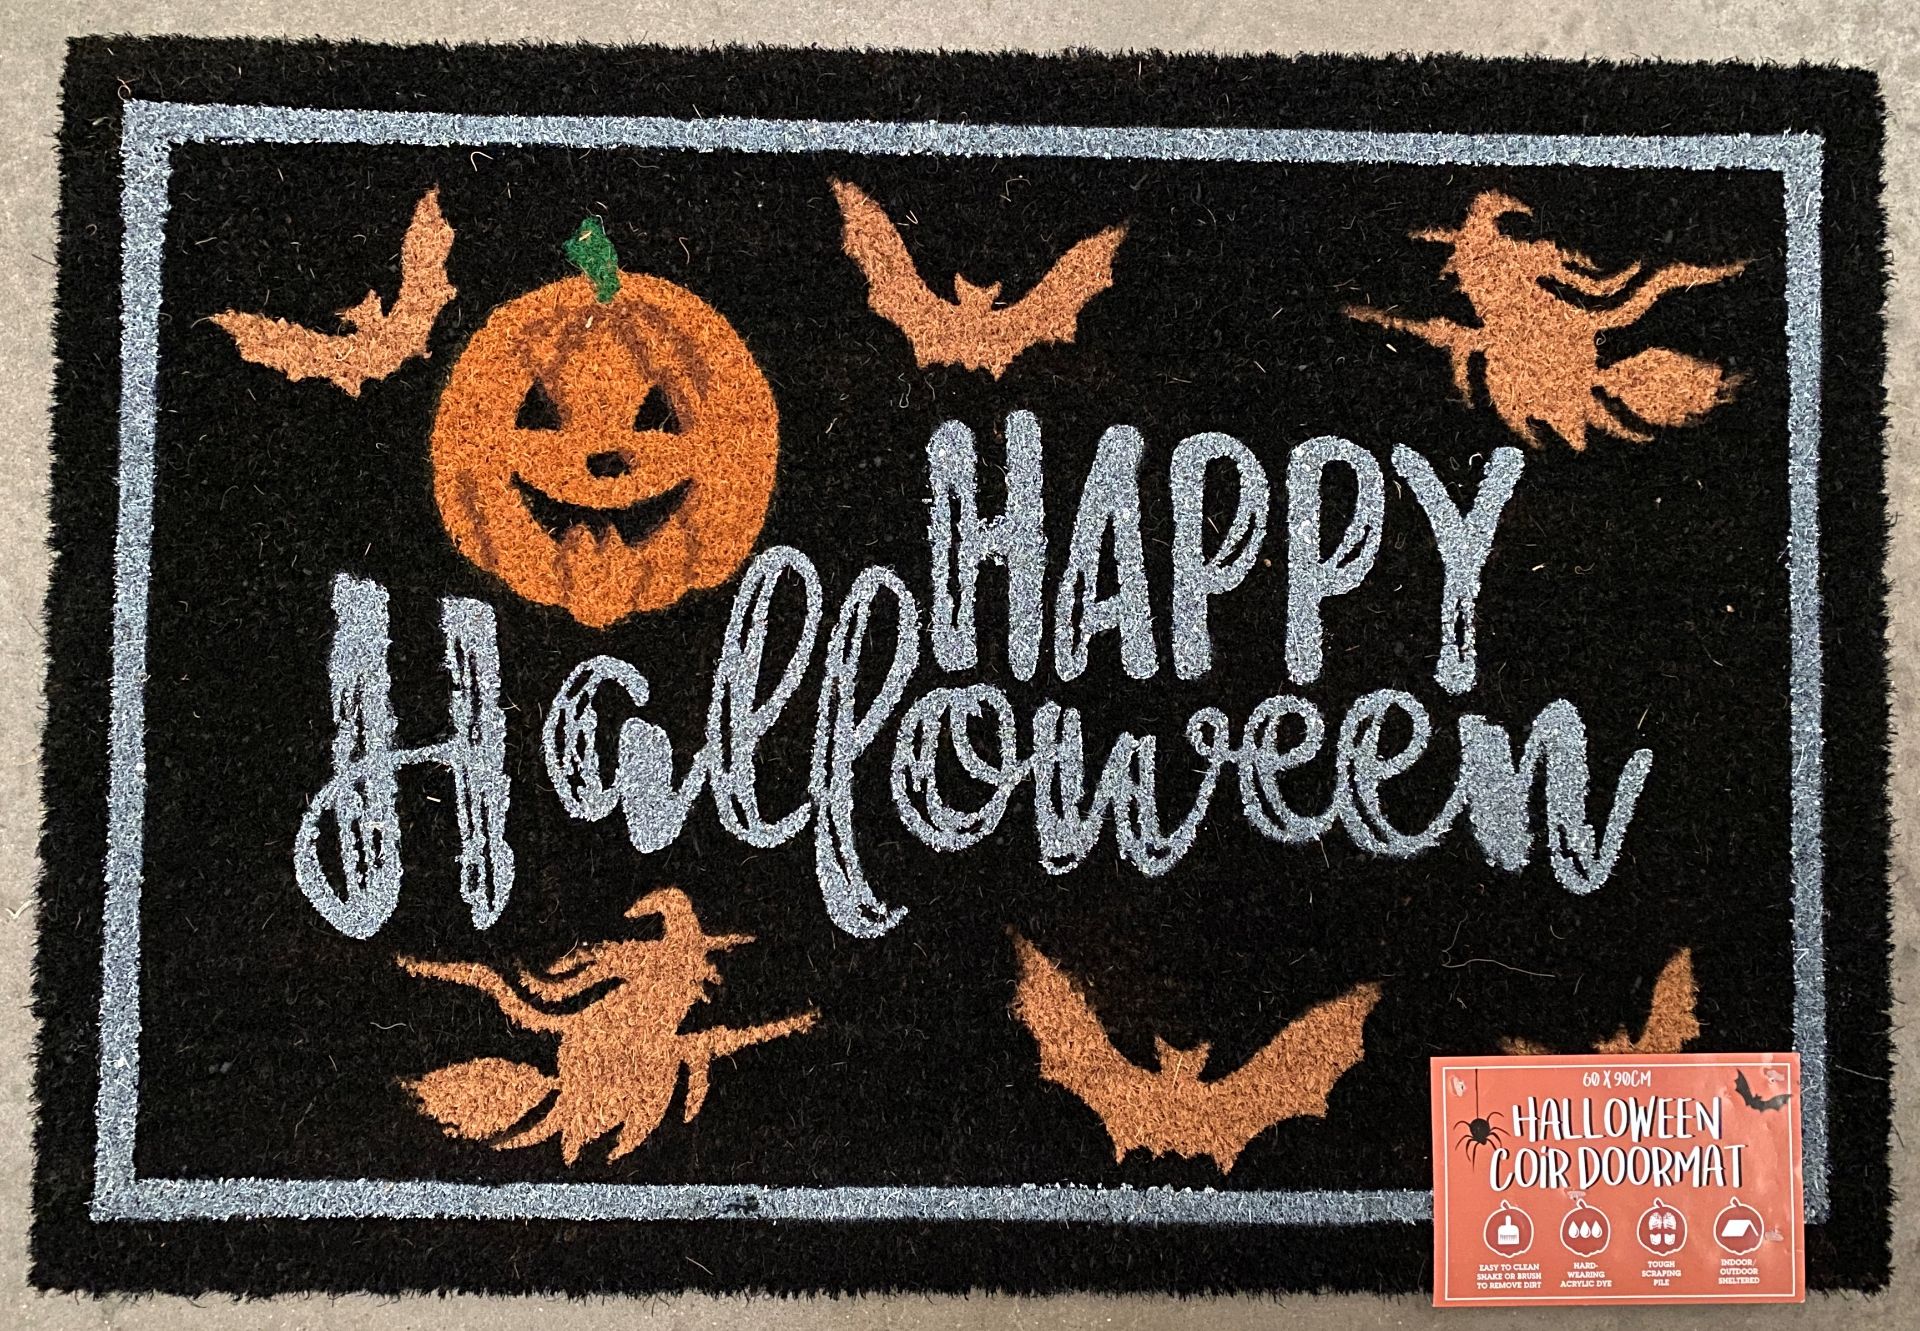 20 x Halloween XL Coir Doormats - 60cm x 90cm (Saleroom location: opposite mezz) Further